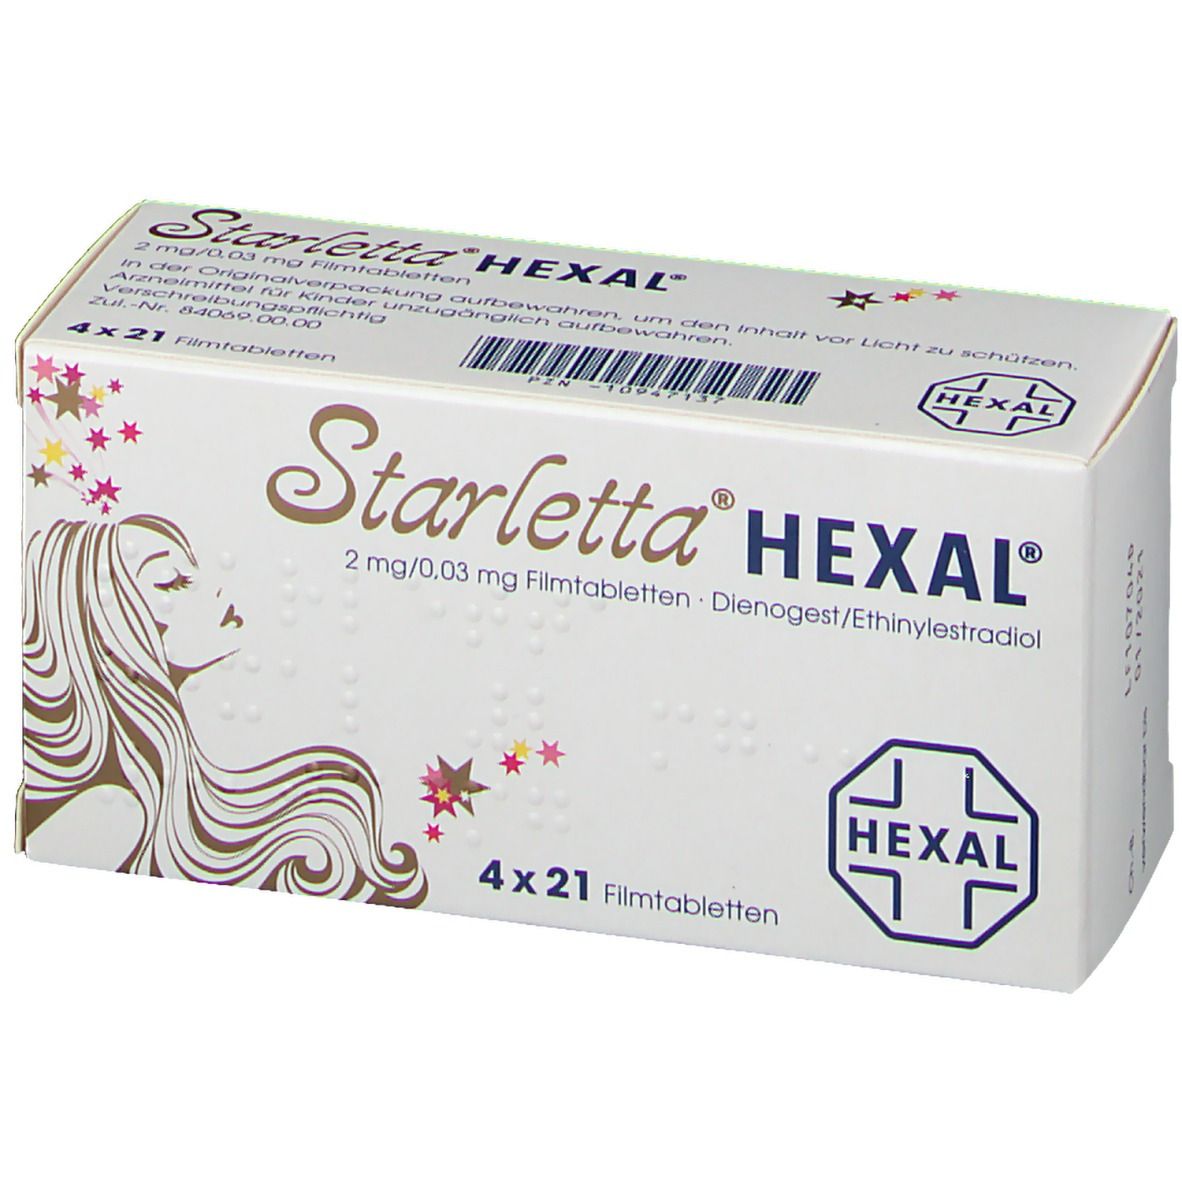 Starletta® HEXAL® 2 mg/0,03 mg